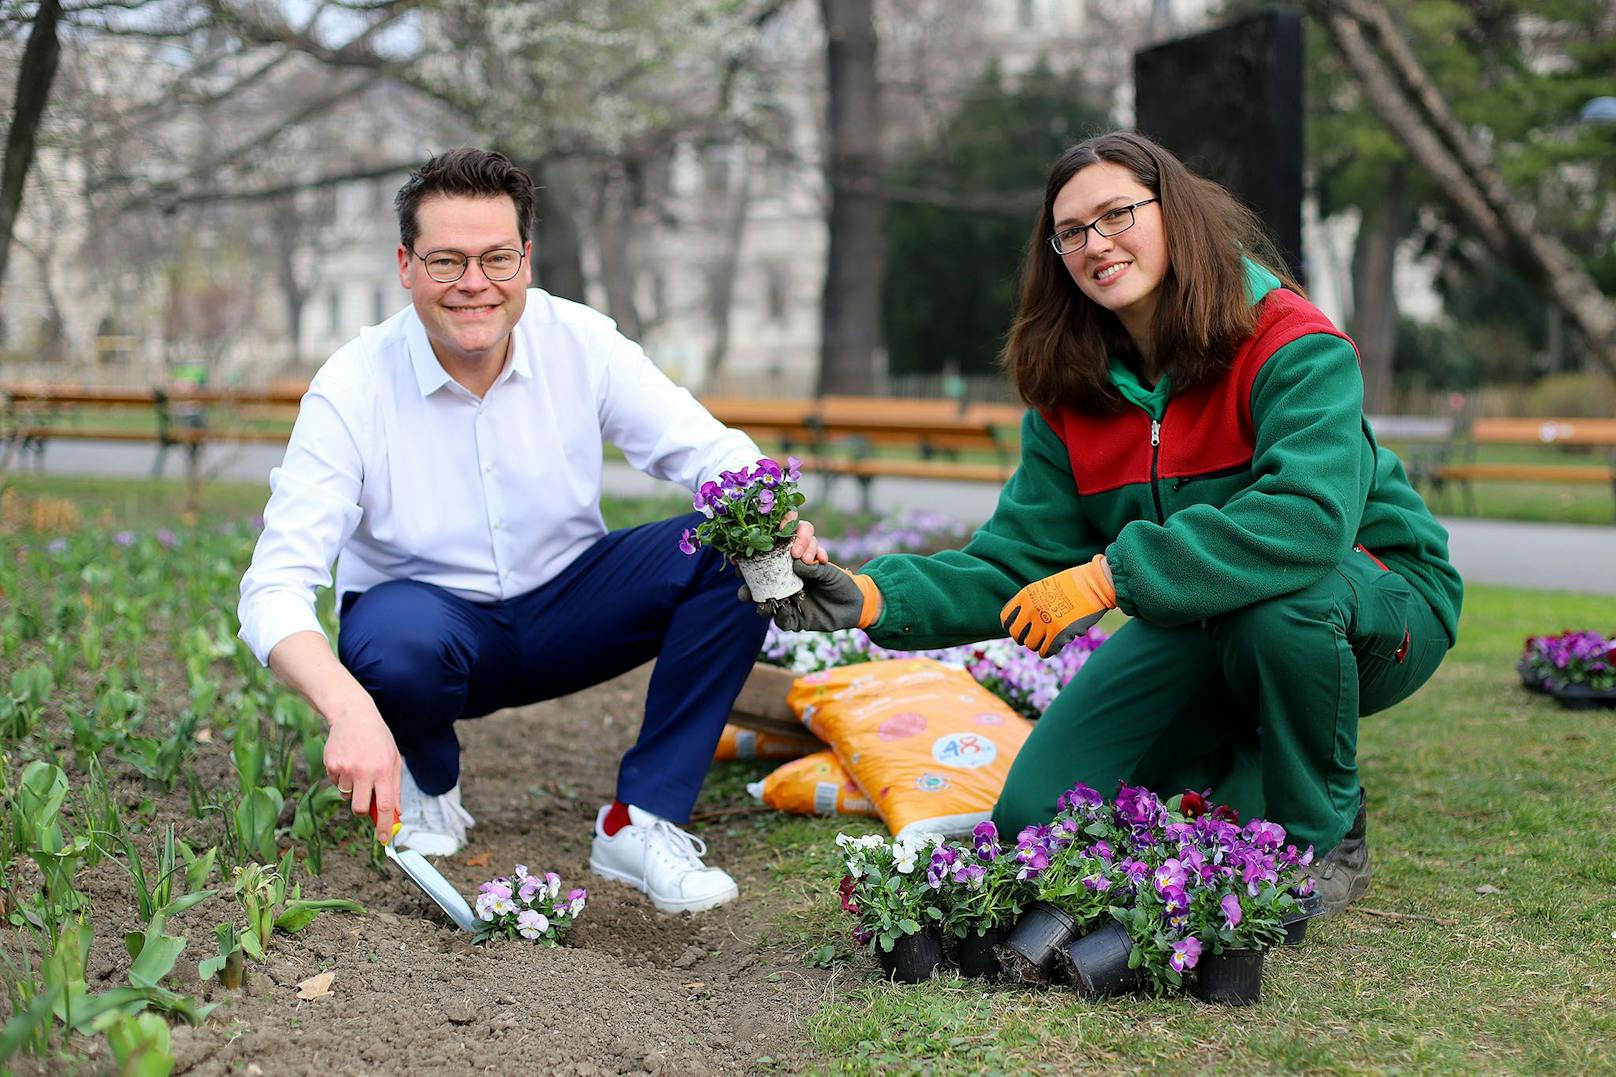 Frühlingsstart in den Wiener Stadtgärten: Heuer blüht Wien vor allem in gelb-orange und pink-weiß, freut sich Klimastadtrat Jürgen Czernohorszky (SPÖ):